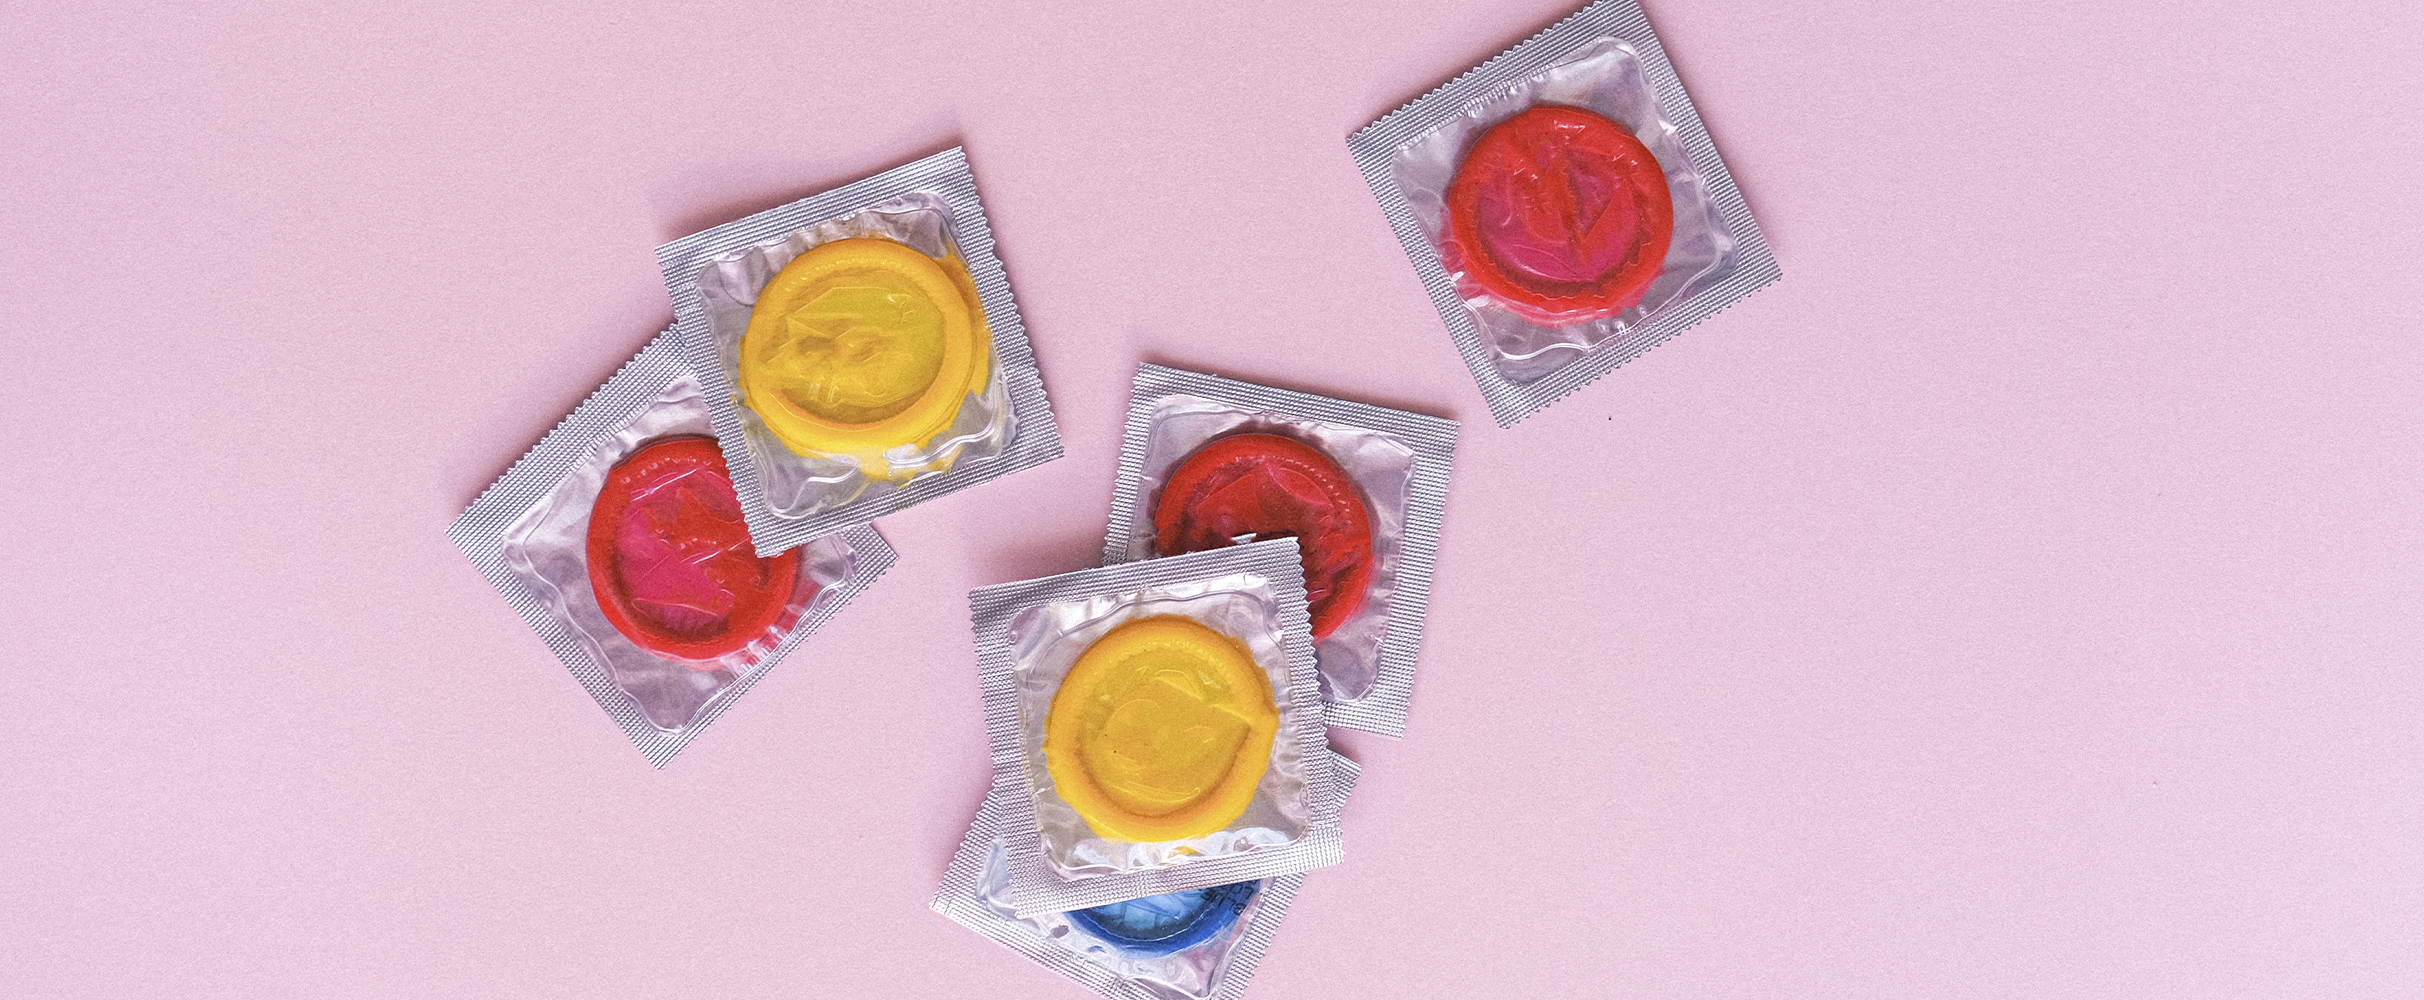 Heb jij de condoomhandschoen al gezien? Geloof het of niet: wordt hipper dan hip